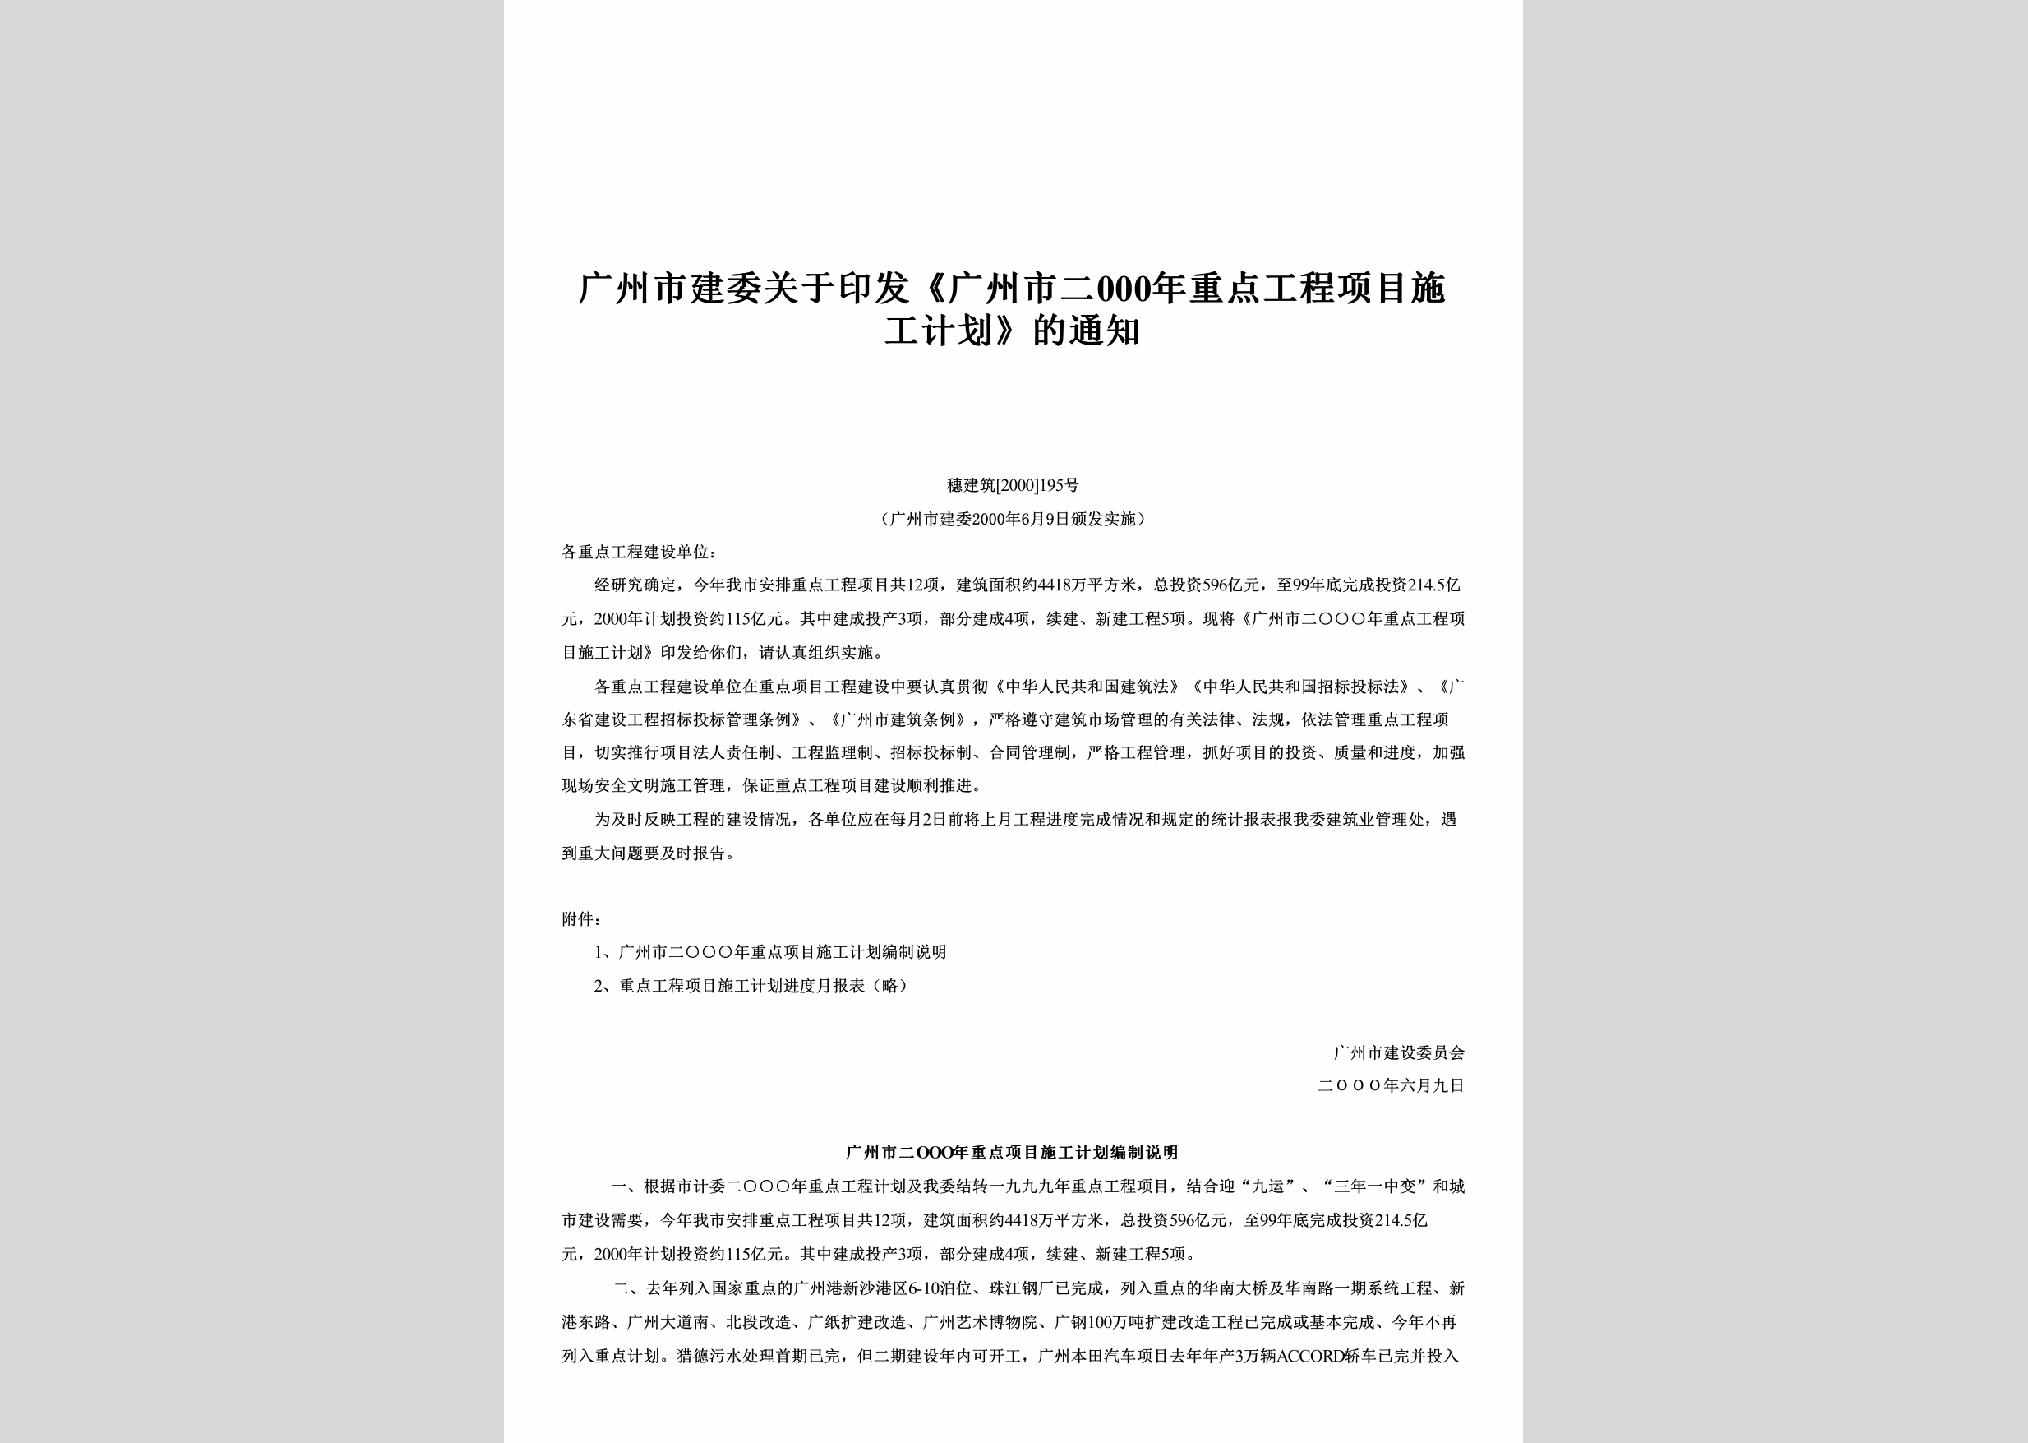 穗建筑[2000]195号：关于印发《广州市二000年重点工程项目施工计划》的通知